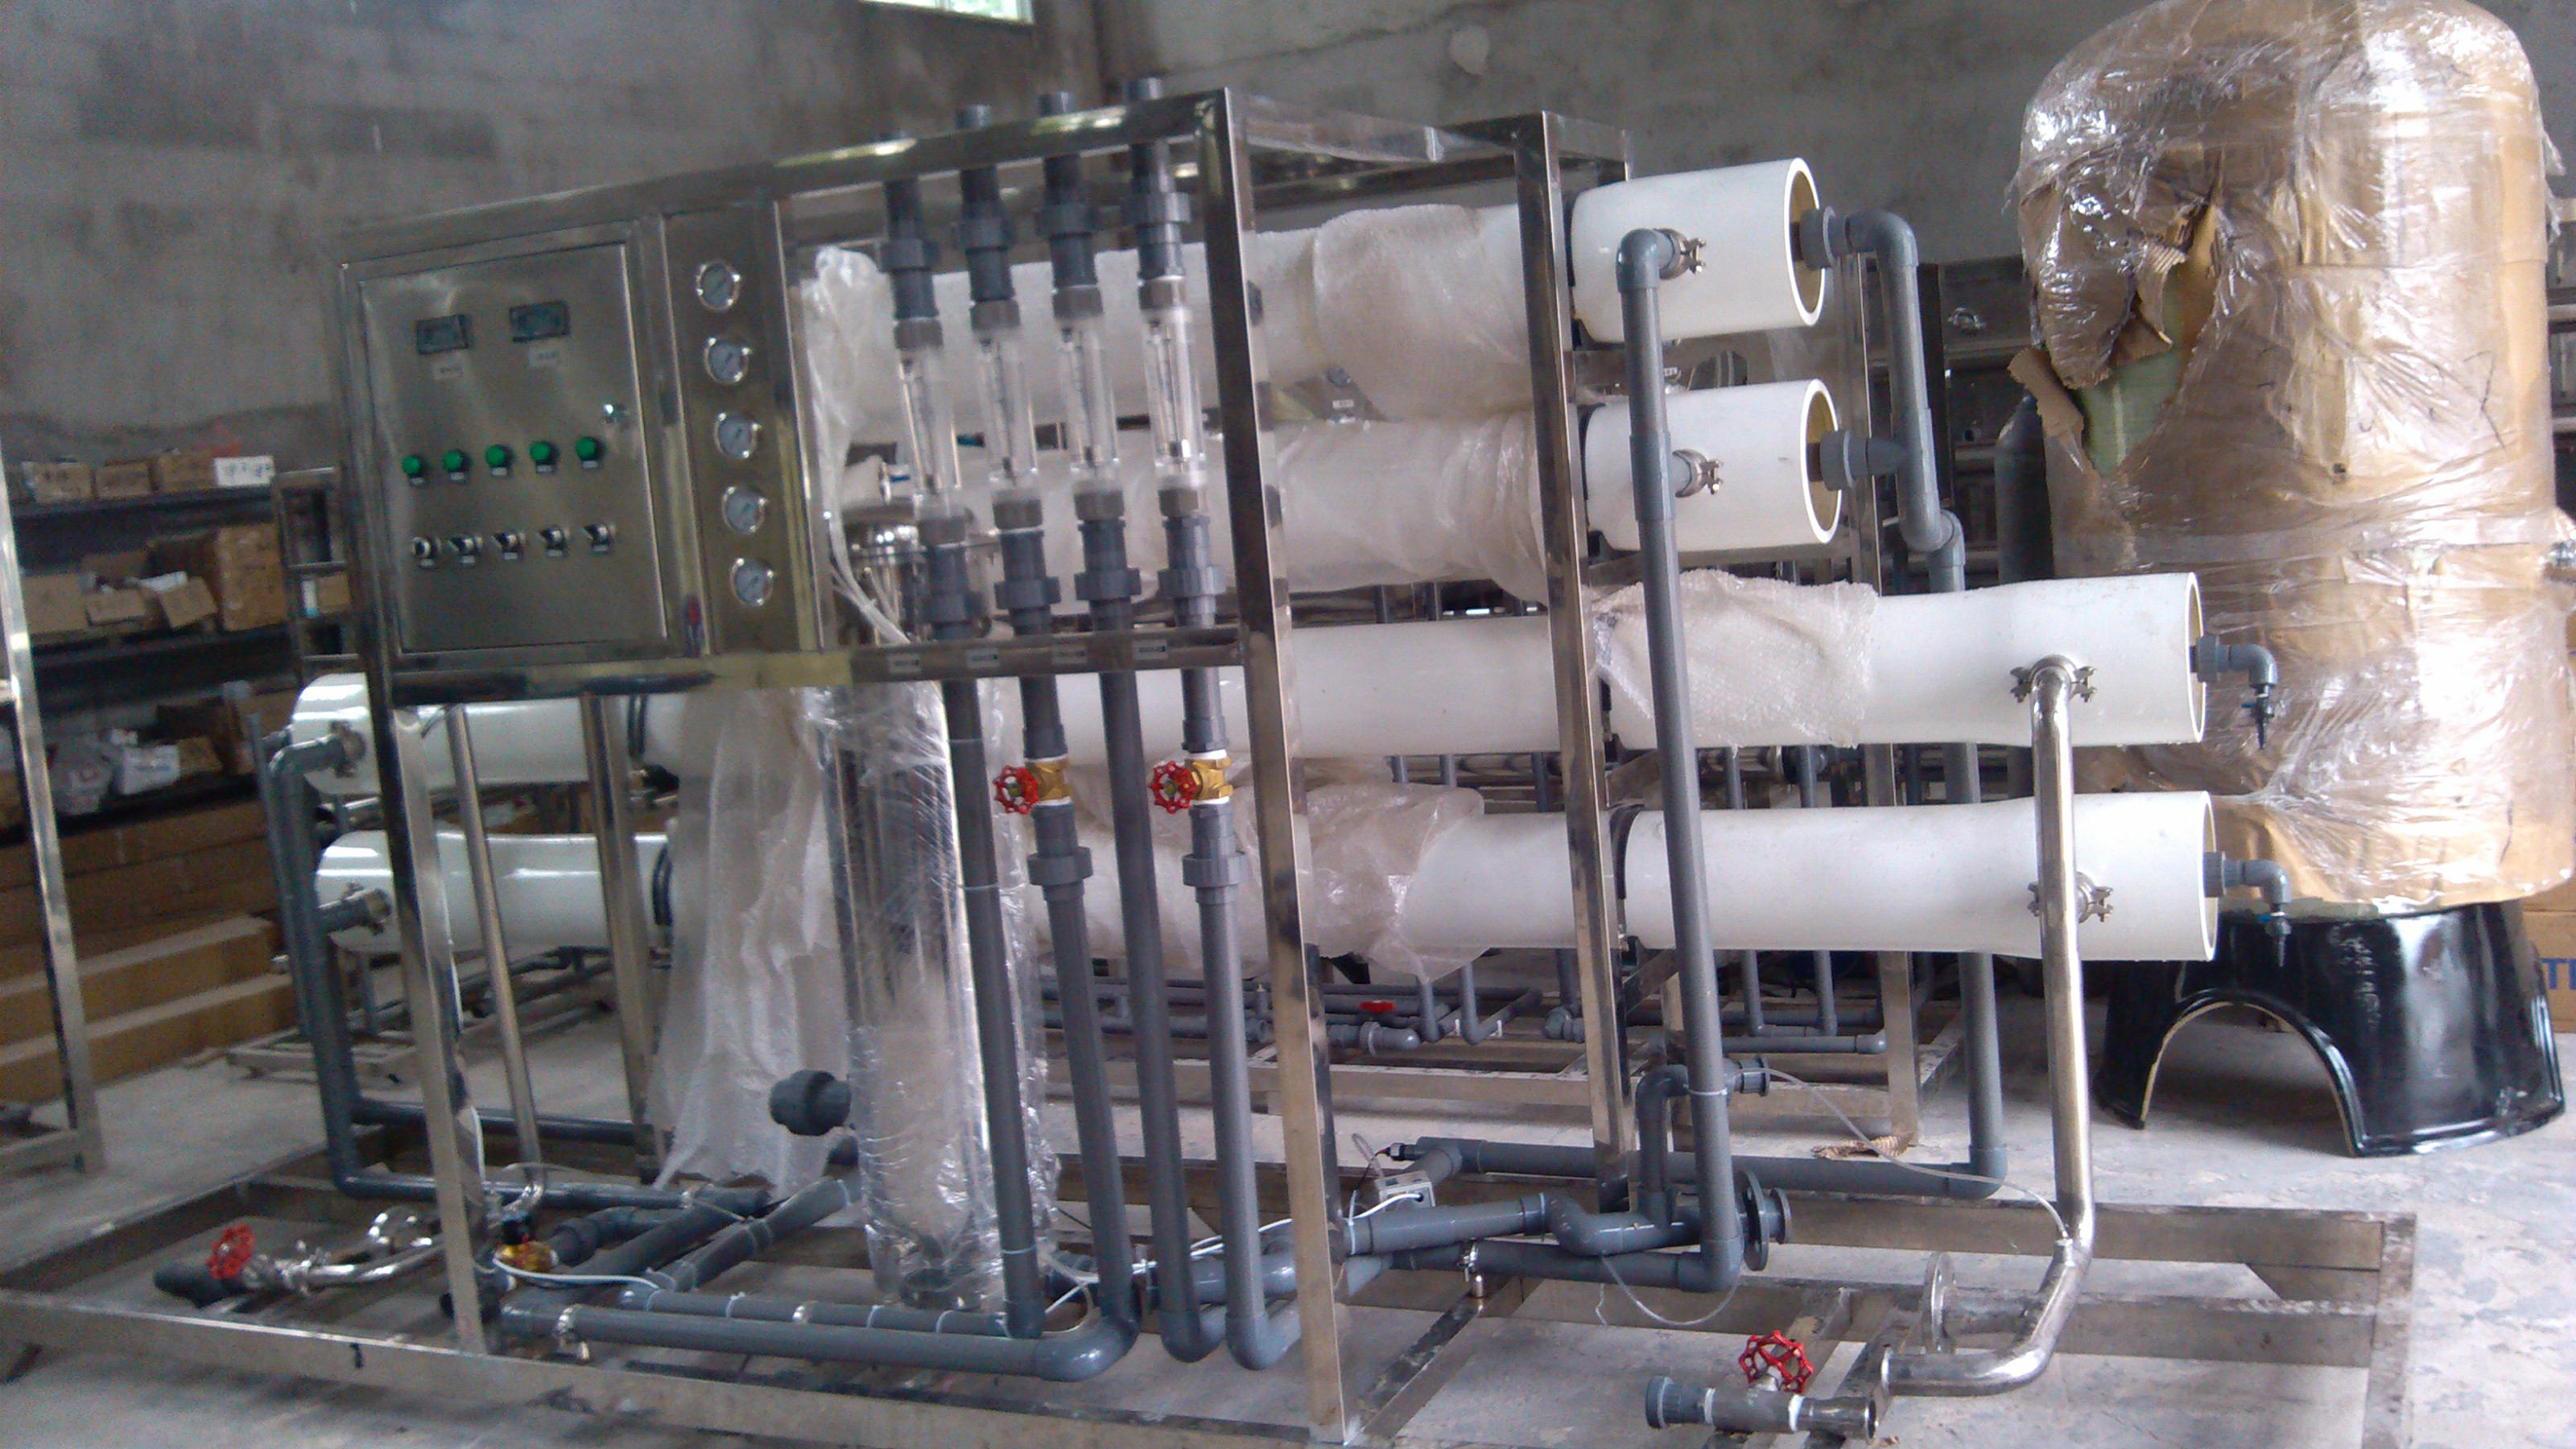 供应大桶水设备生产厂家/供应4吨双级纯净水设备生产设备厂家产厂家/大桶水设备生产厂家